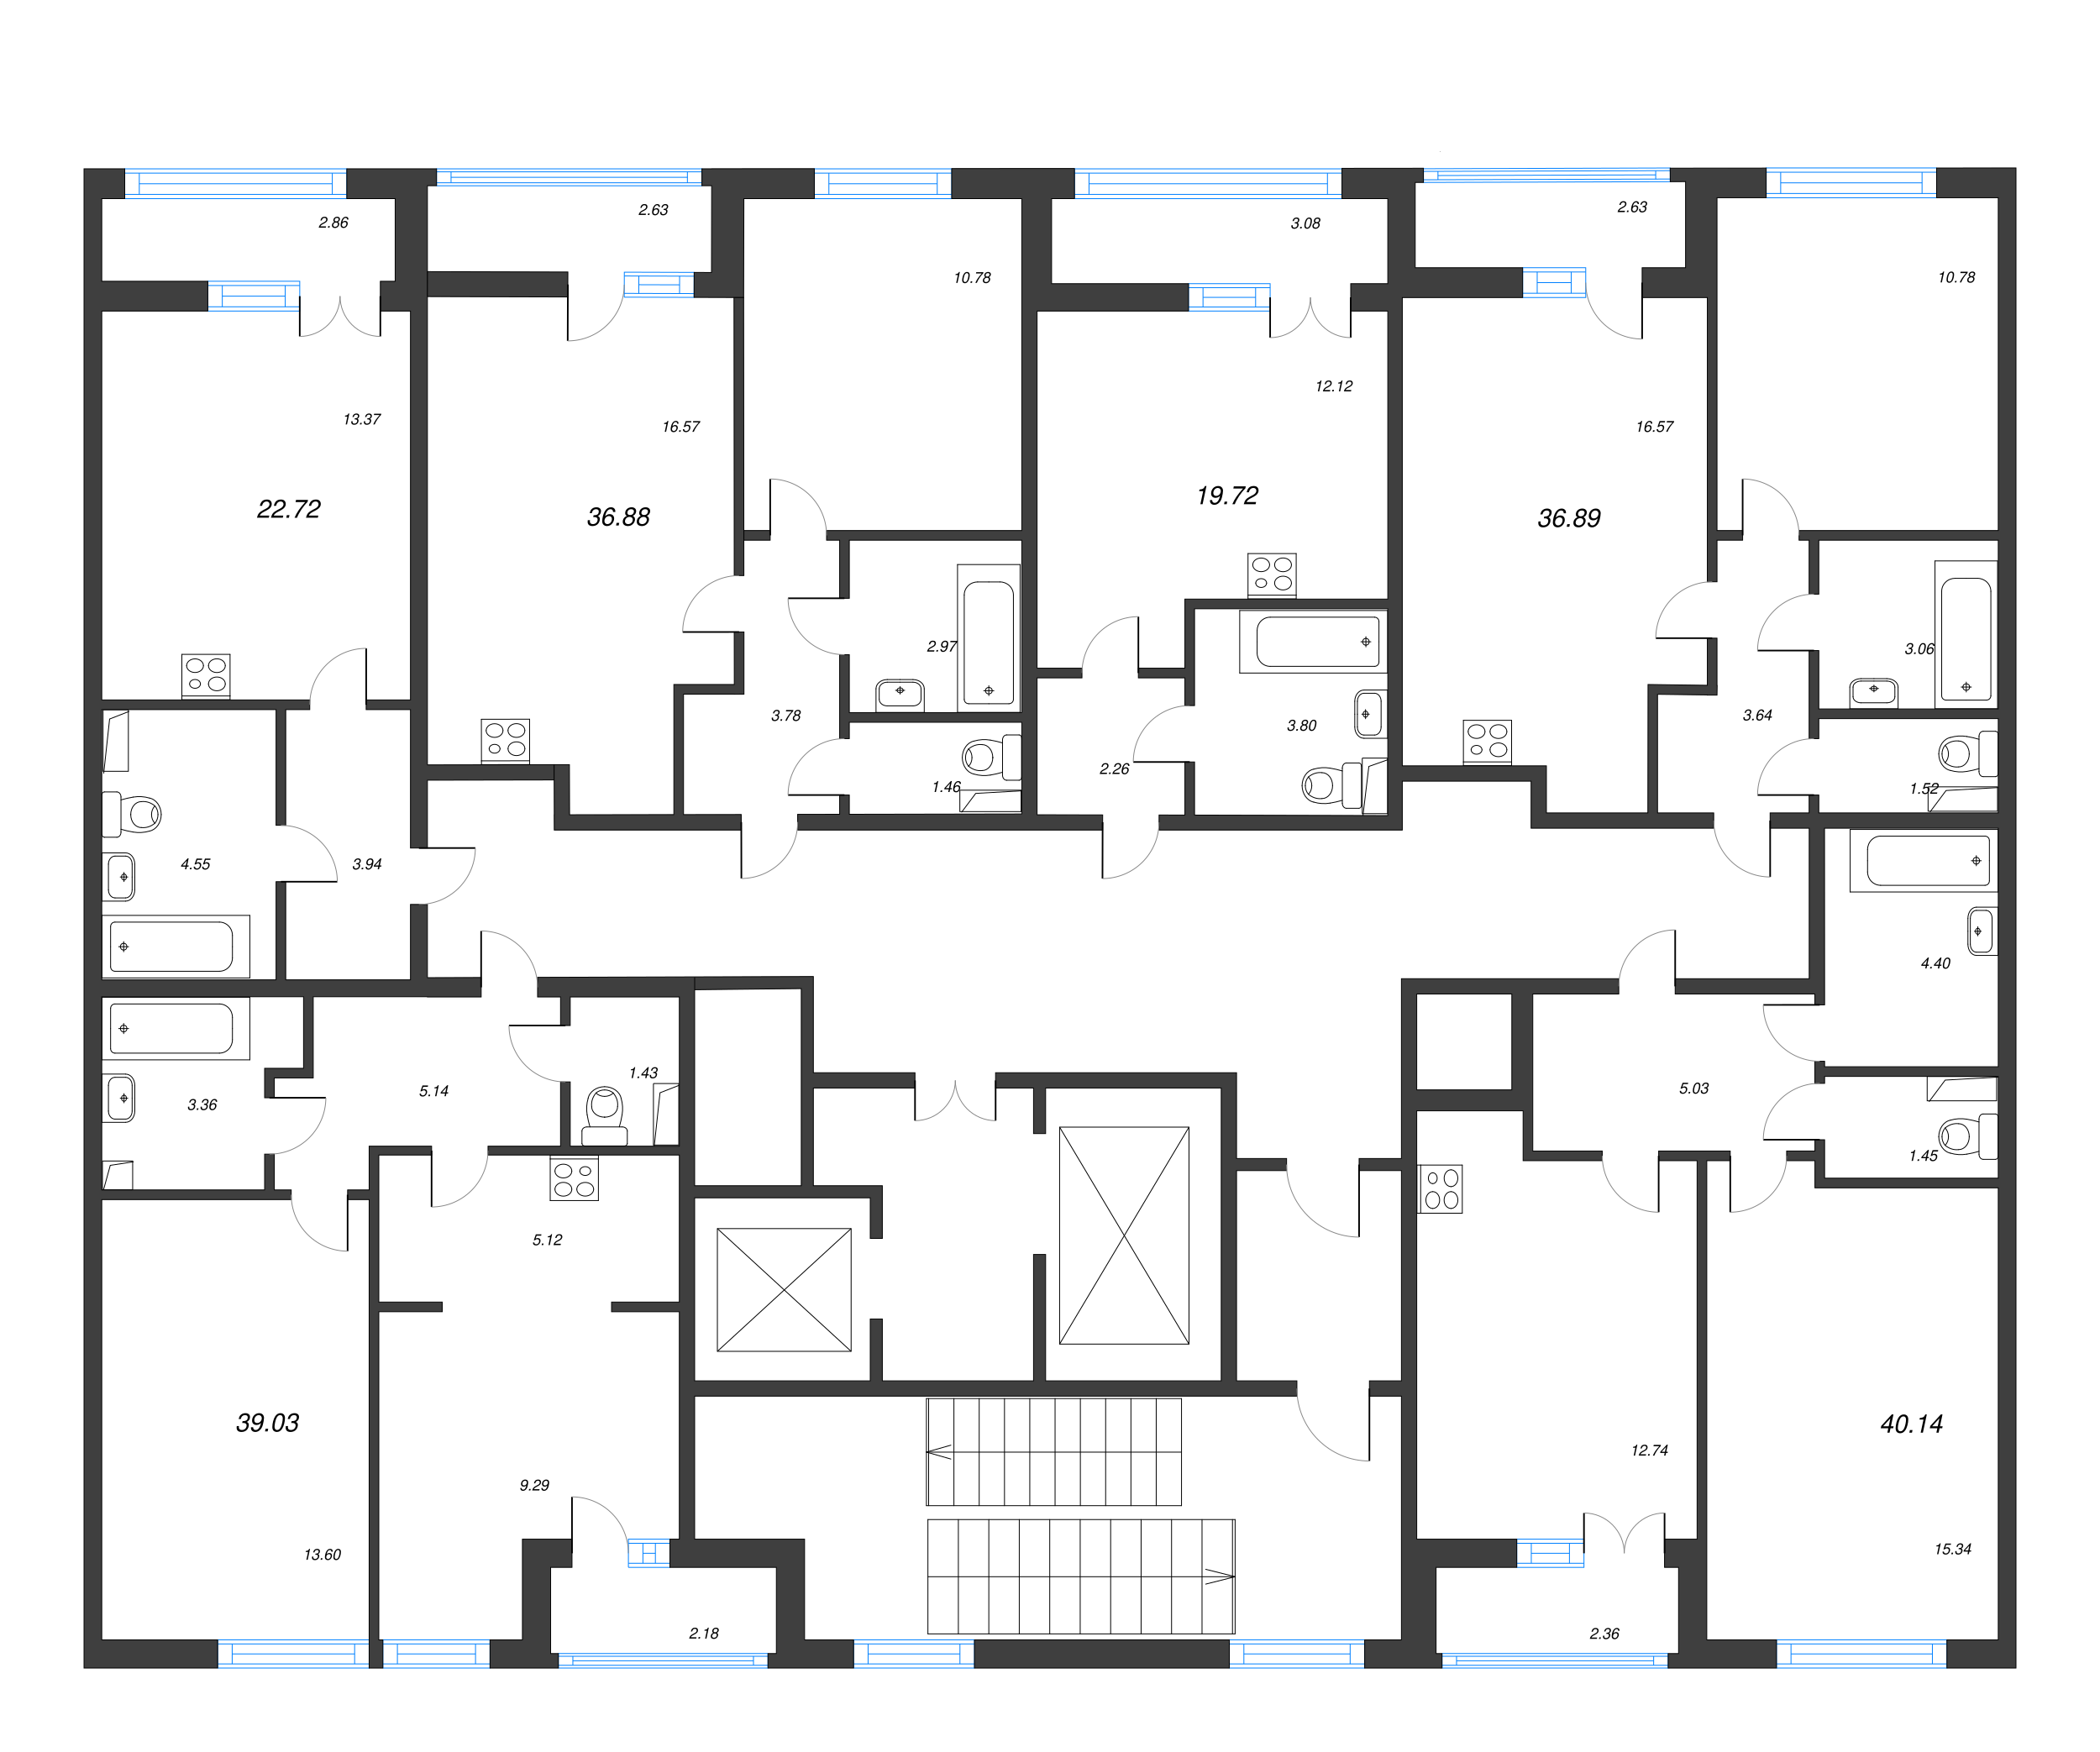 Квартира-студия, 22.72 м² в ЖК "AEROCITY" - планировка этажа